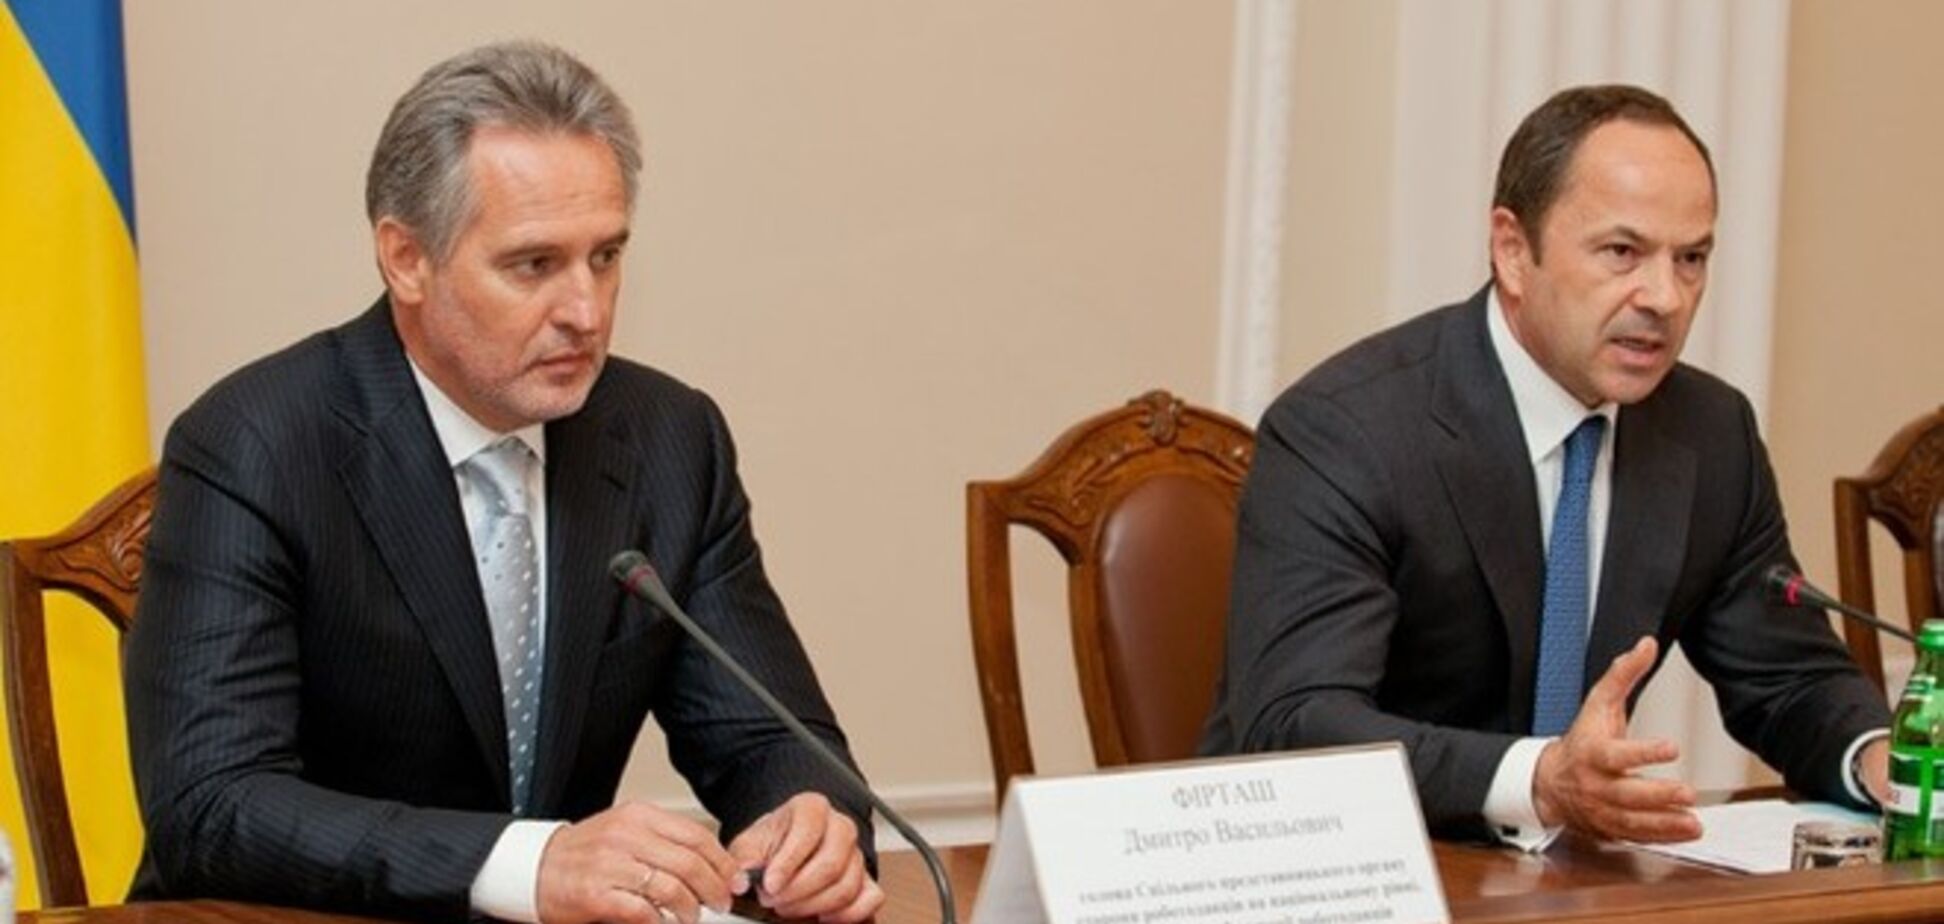 Порошенко уволил Тигипко и Фирташа с должностей сопредседателей социально-экономического совета